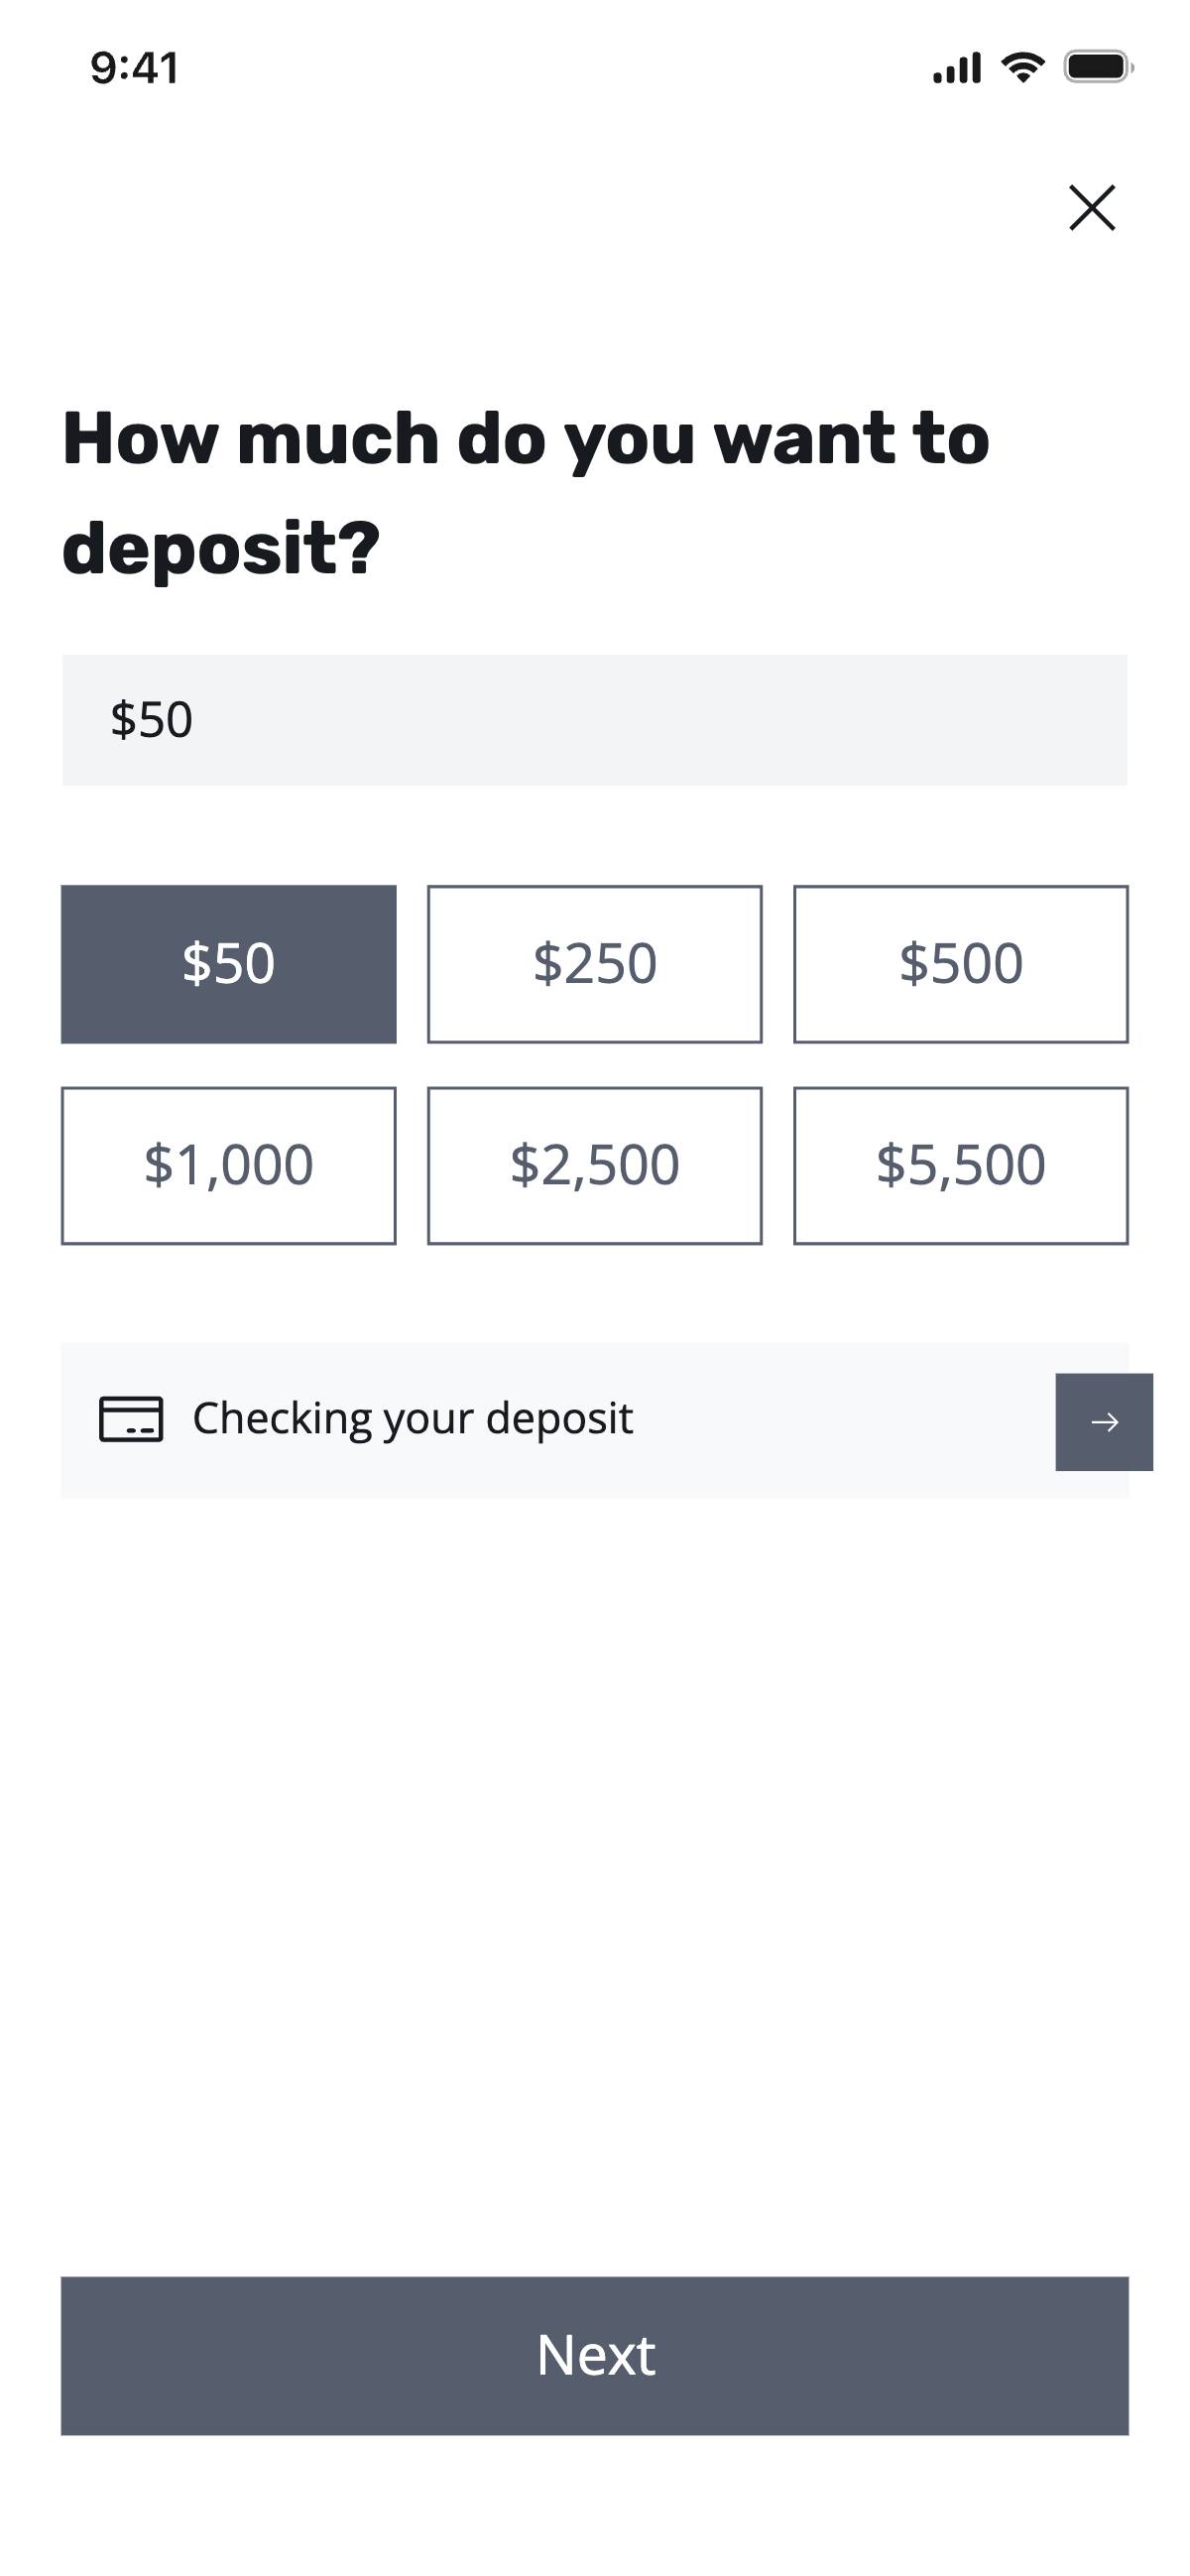 Deposit - Input an amount